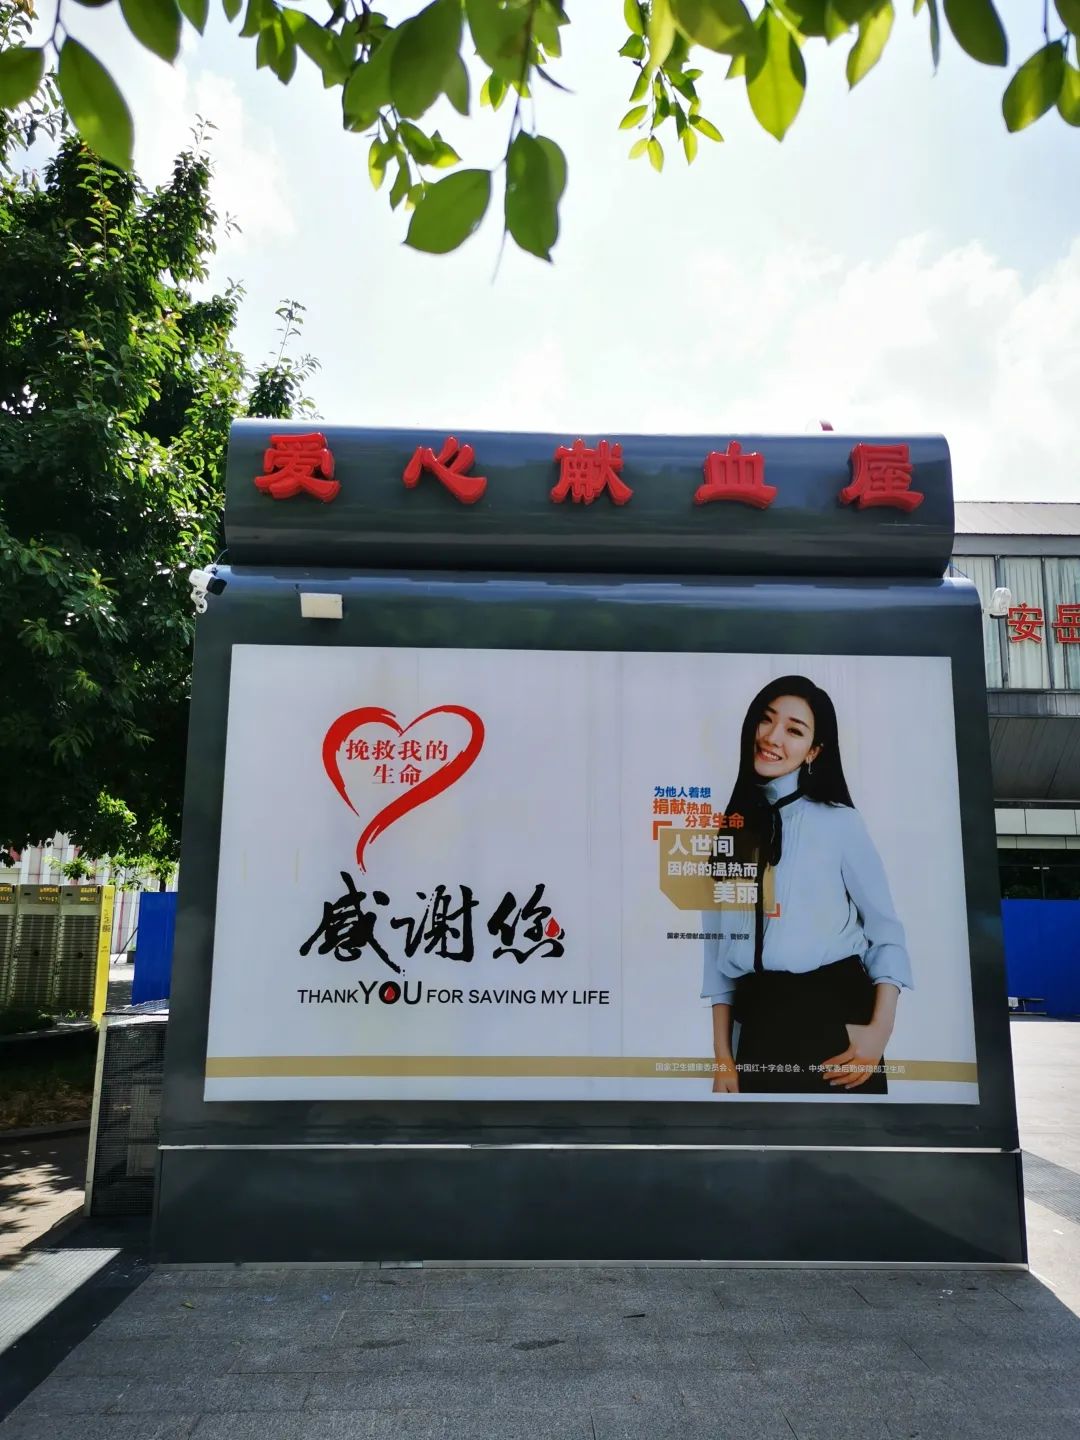 撸袖献血有了新去处 资阳安岳时代广场爱心献血屋9月1日正式启用